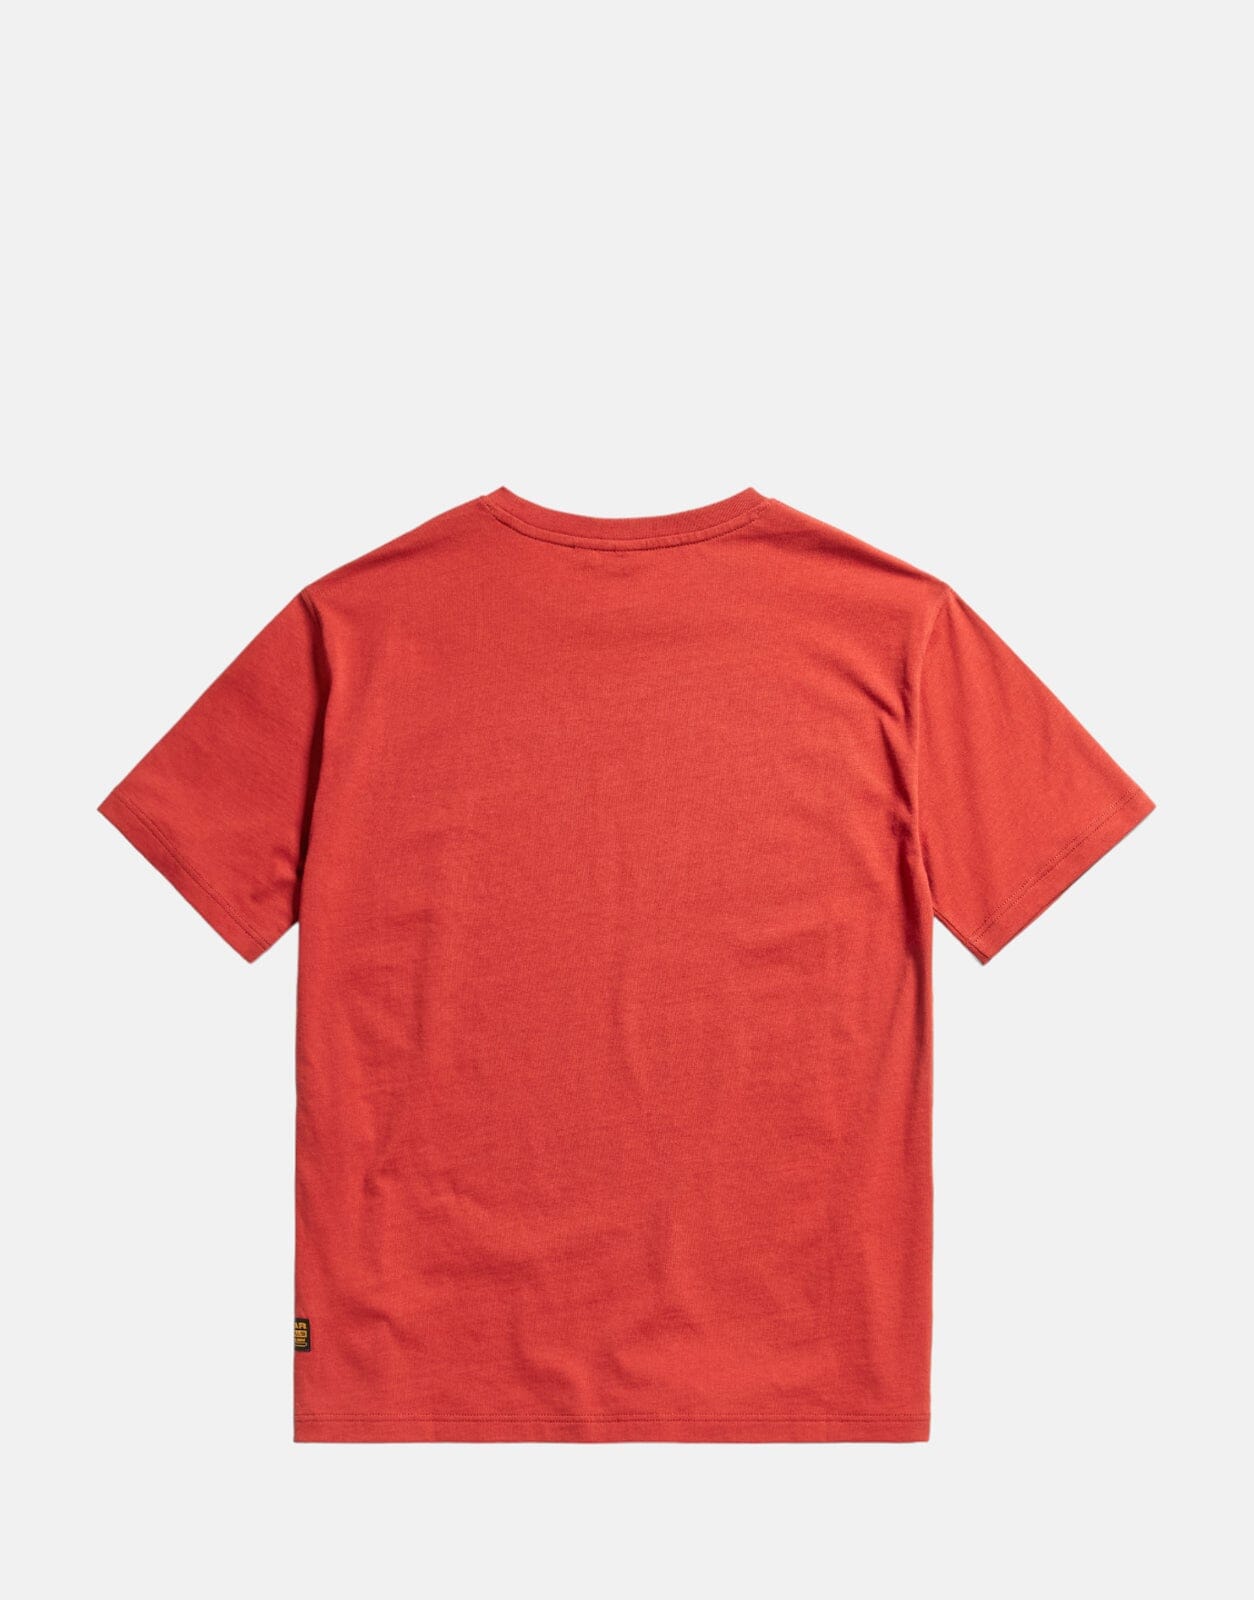 G-Star RAW Kids T-Shirt Rusty Red - Subwear